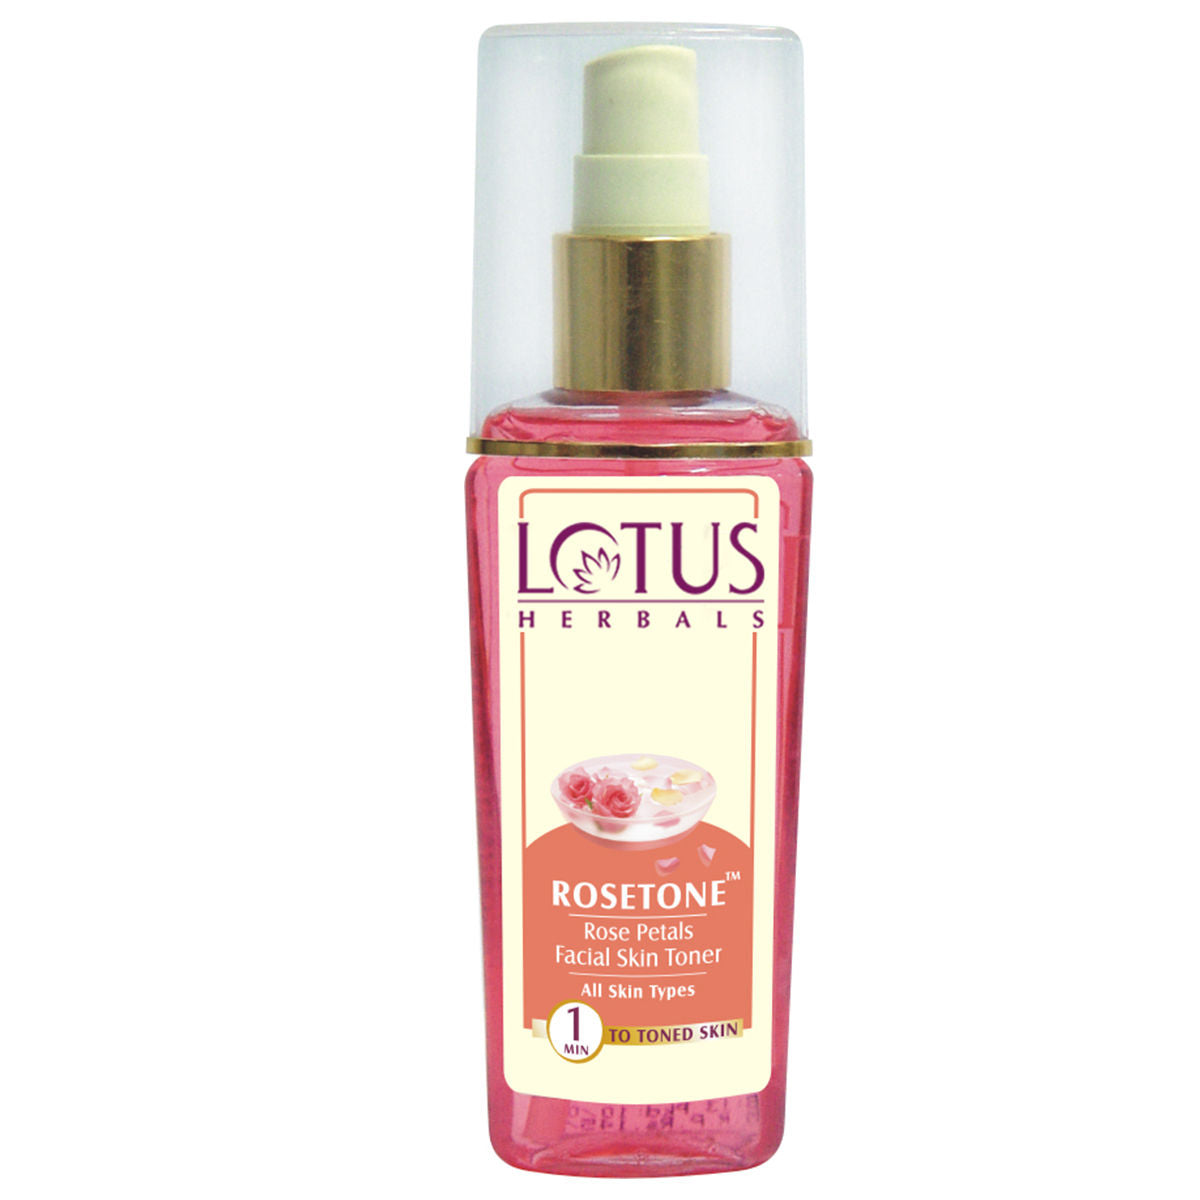 Lotus Herbals Rosetone Rose Petals Facial Skin Toner (100ml)